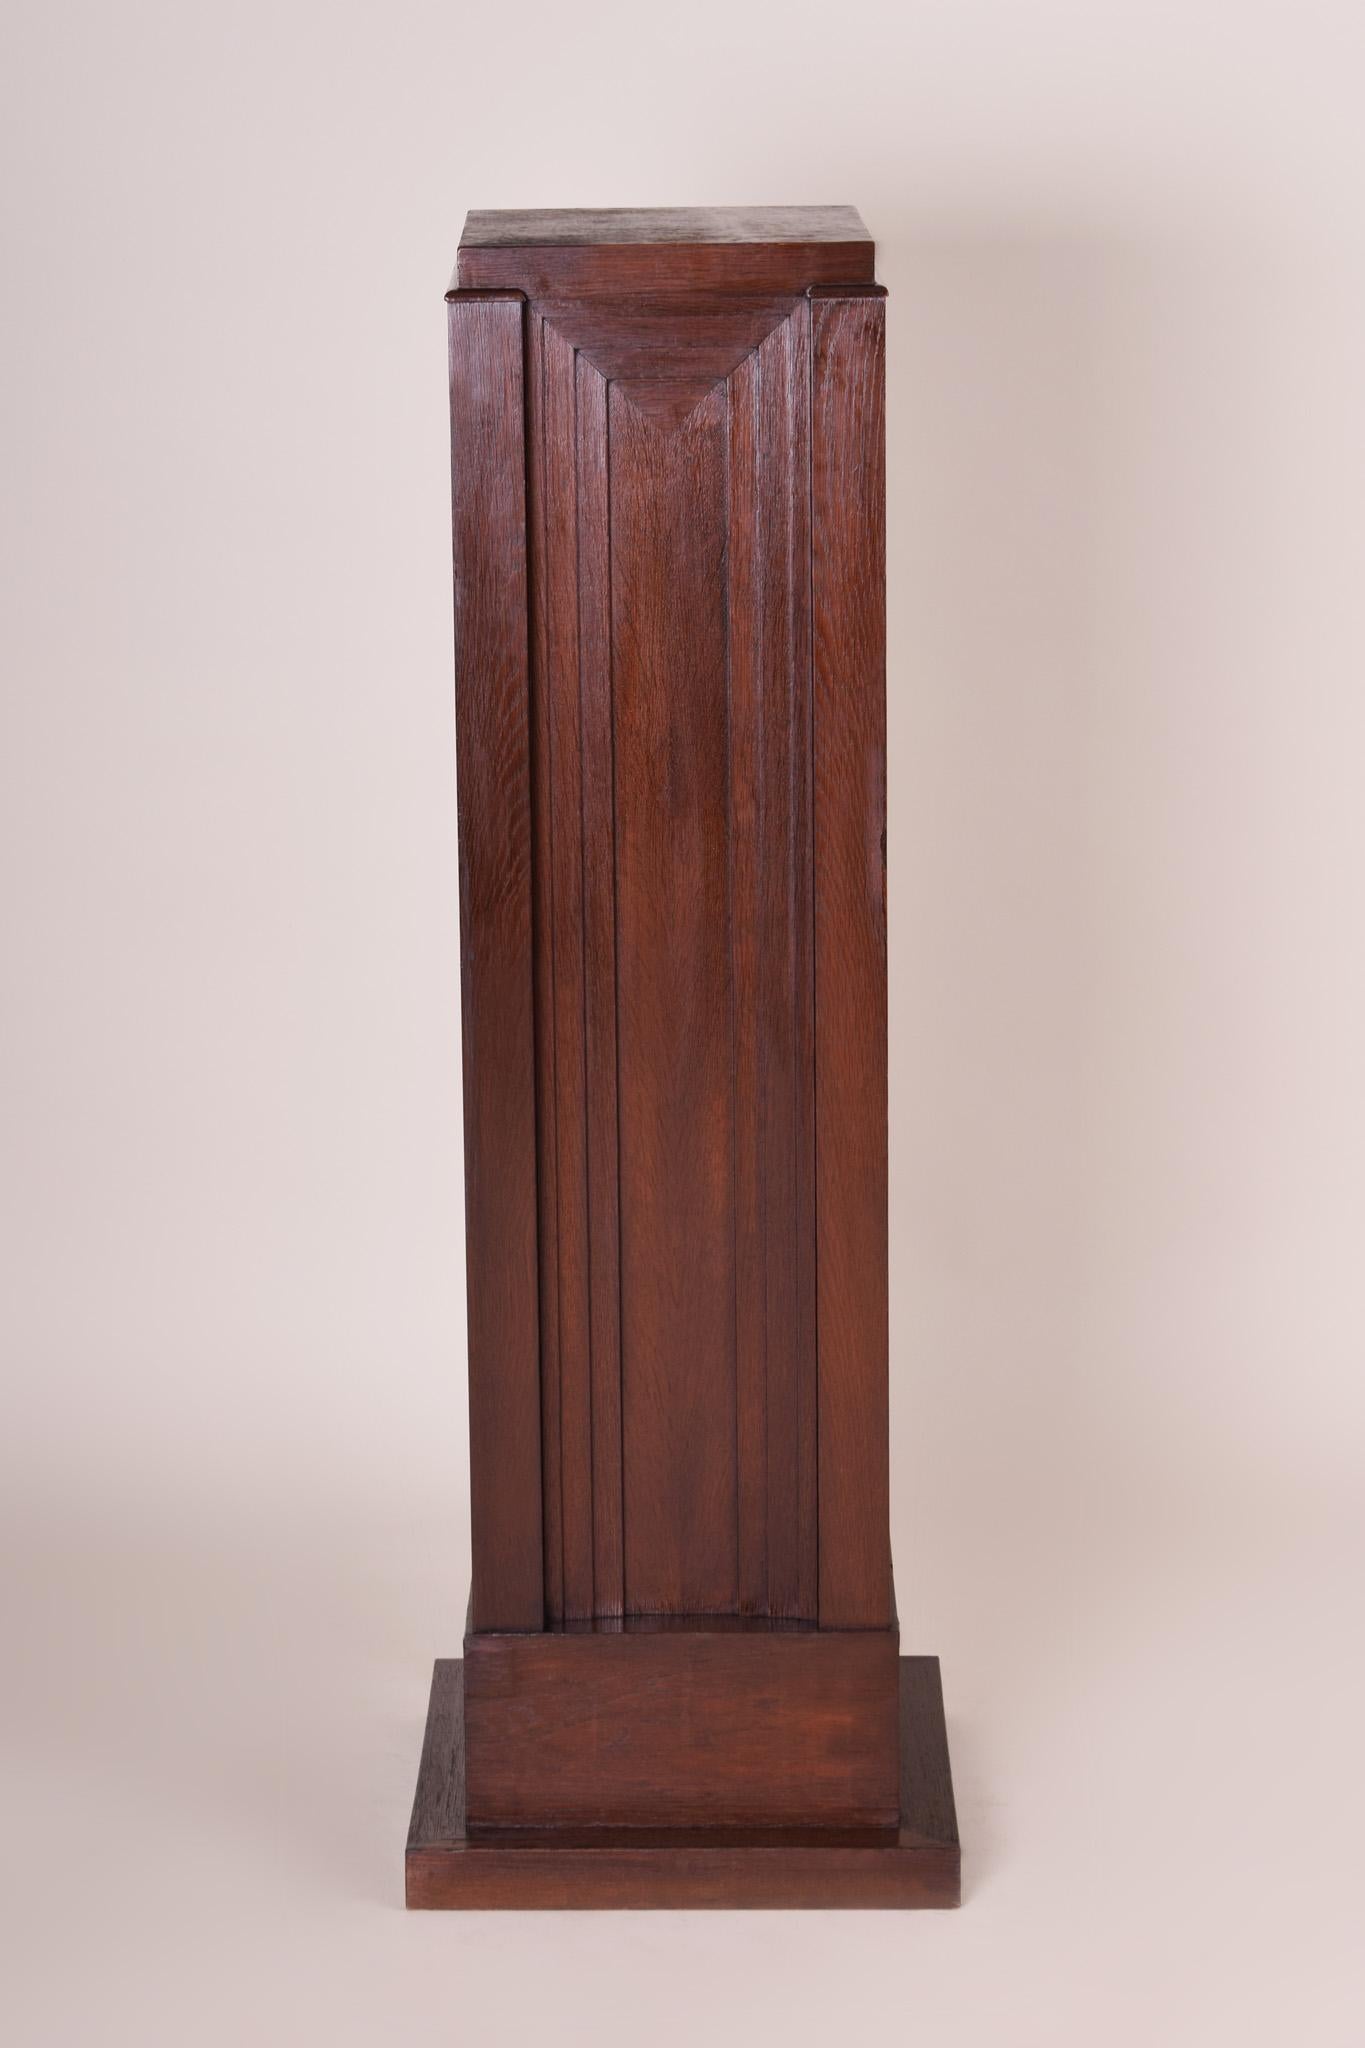 Unique Art Nouveau pedestal
Architect: Jan Kotera
Source: Czech Republic
Material: Oak, shellac polish
Period: 1910-1919.